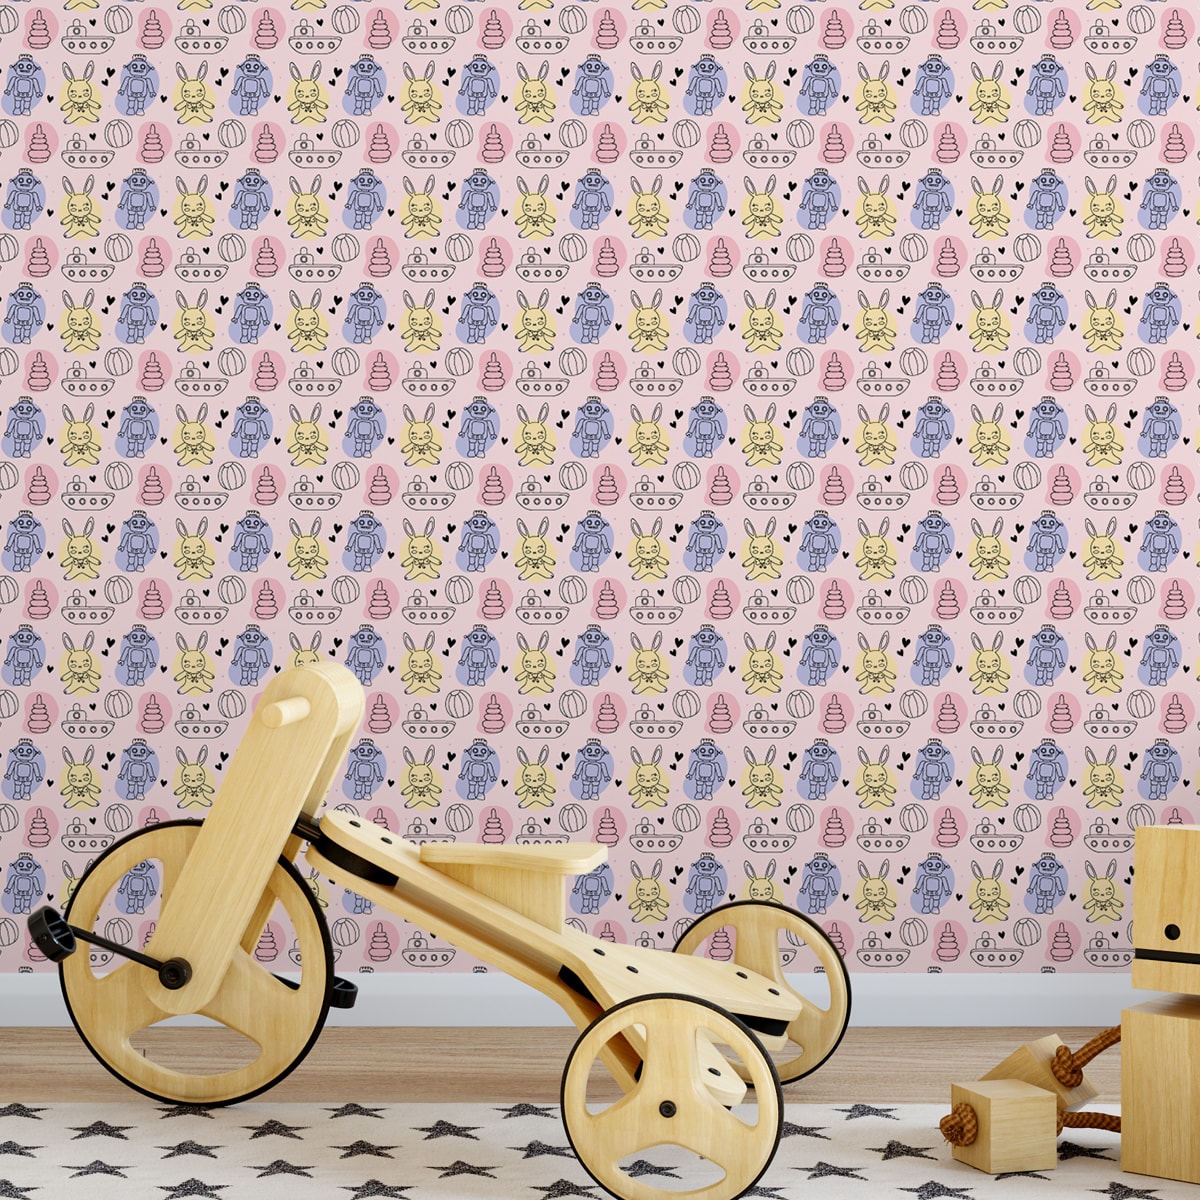 Jugend Tapete rosa: Coole Kinder Jugend Tapete "Toy Zone" mit lustigem Spielzeug und Robotern auf rosa angepasst an Little Greene Wandfarben- Vliestapete Tiere